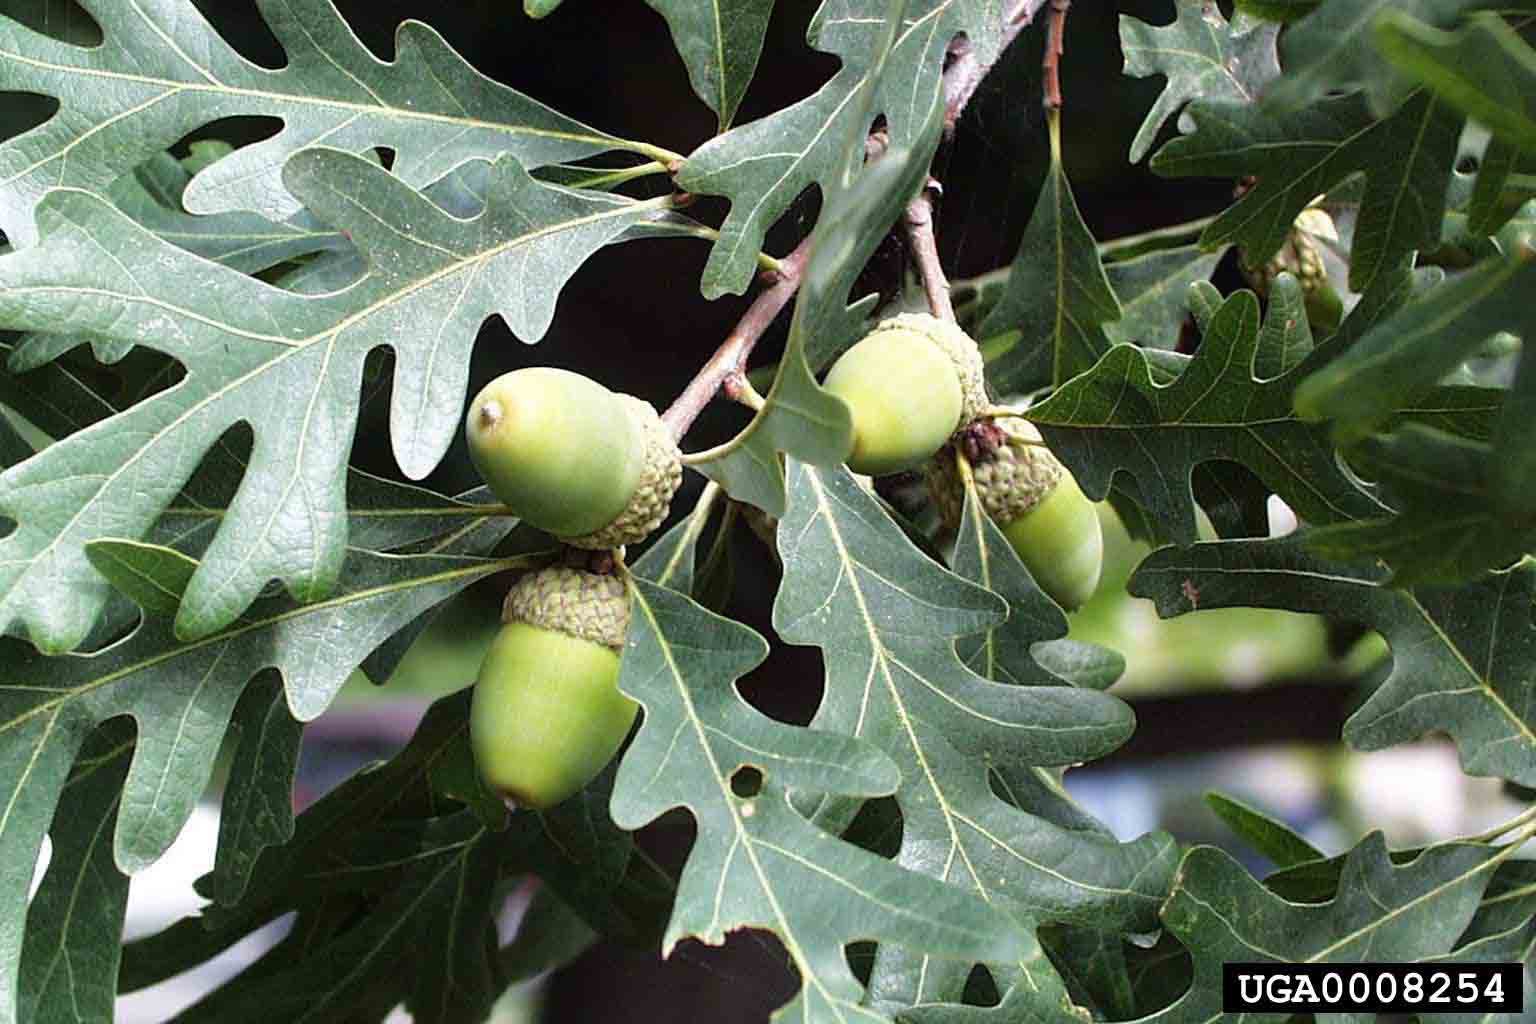 White oak acorns